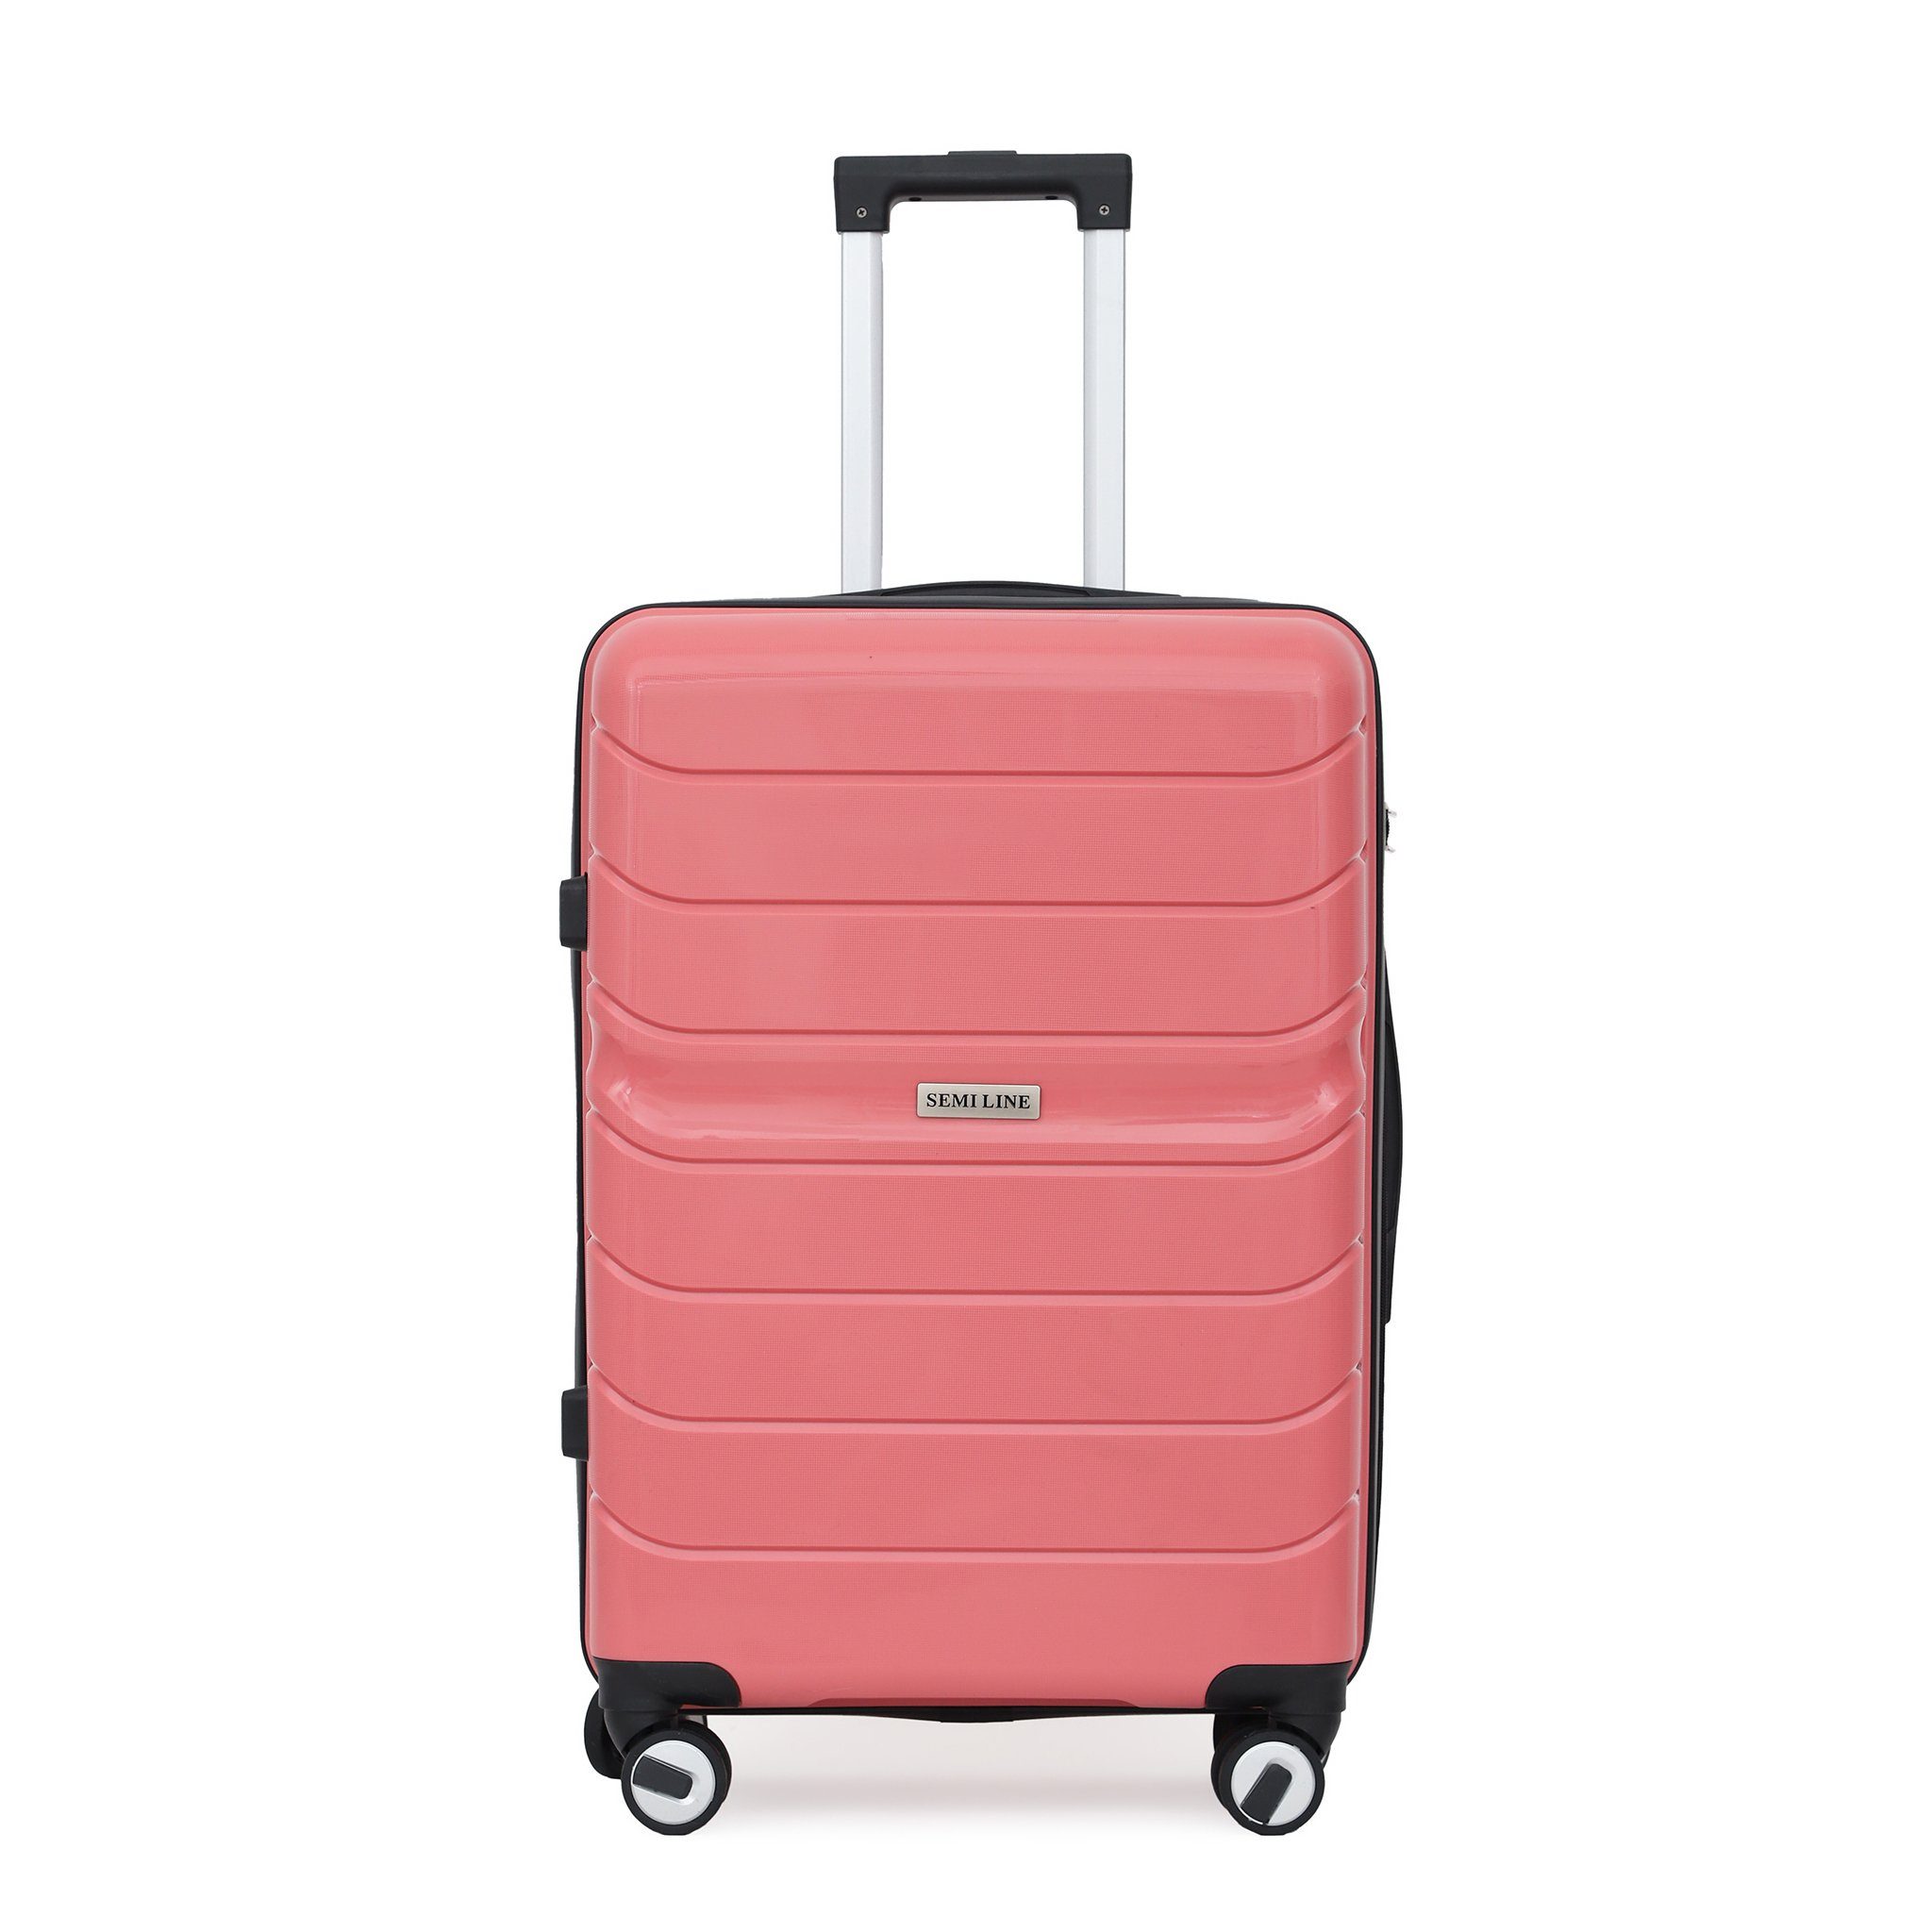 Semiline Koffer, Eleganter Koffer zu einem attraktiven Preis, Der Koffer  ist mit vier Rädern ausgestattet, die eine komfortable Reise bieten.